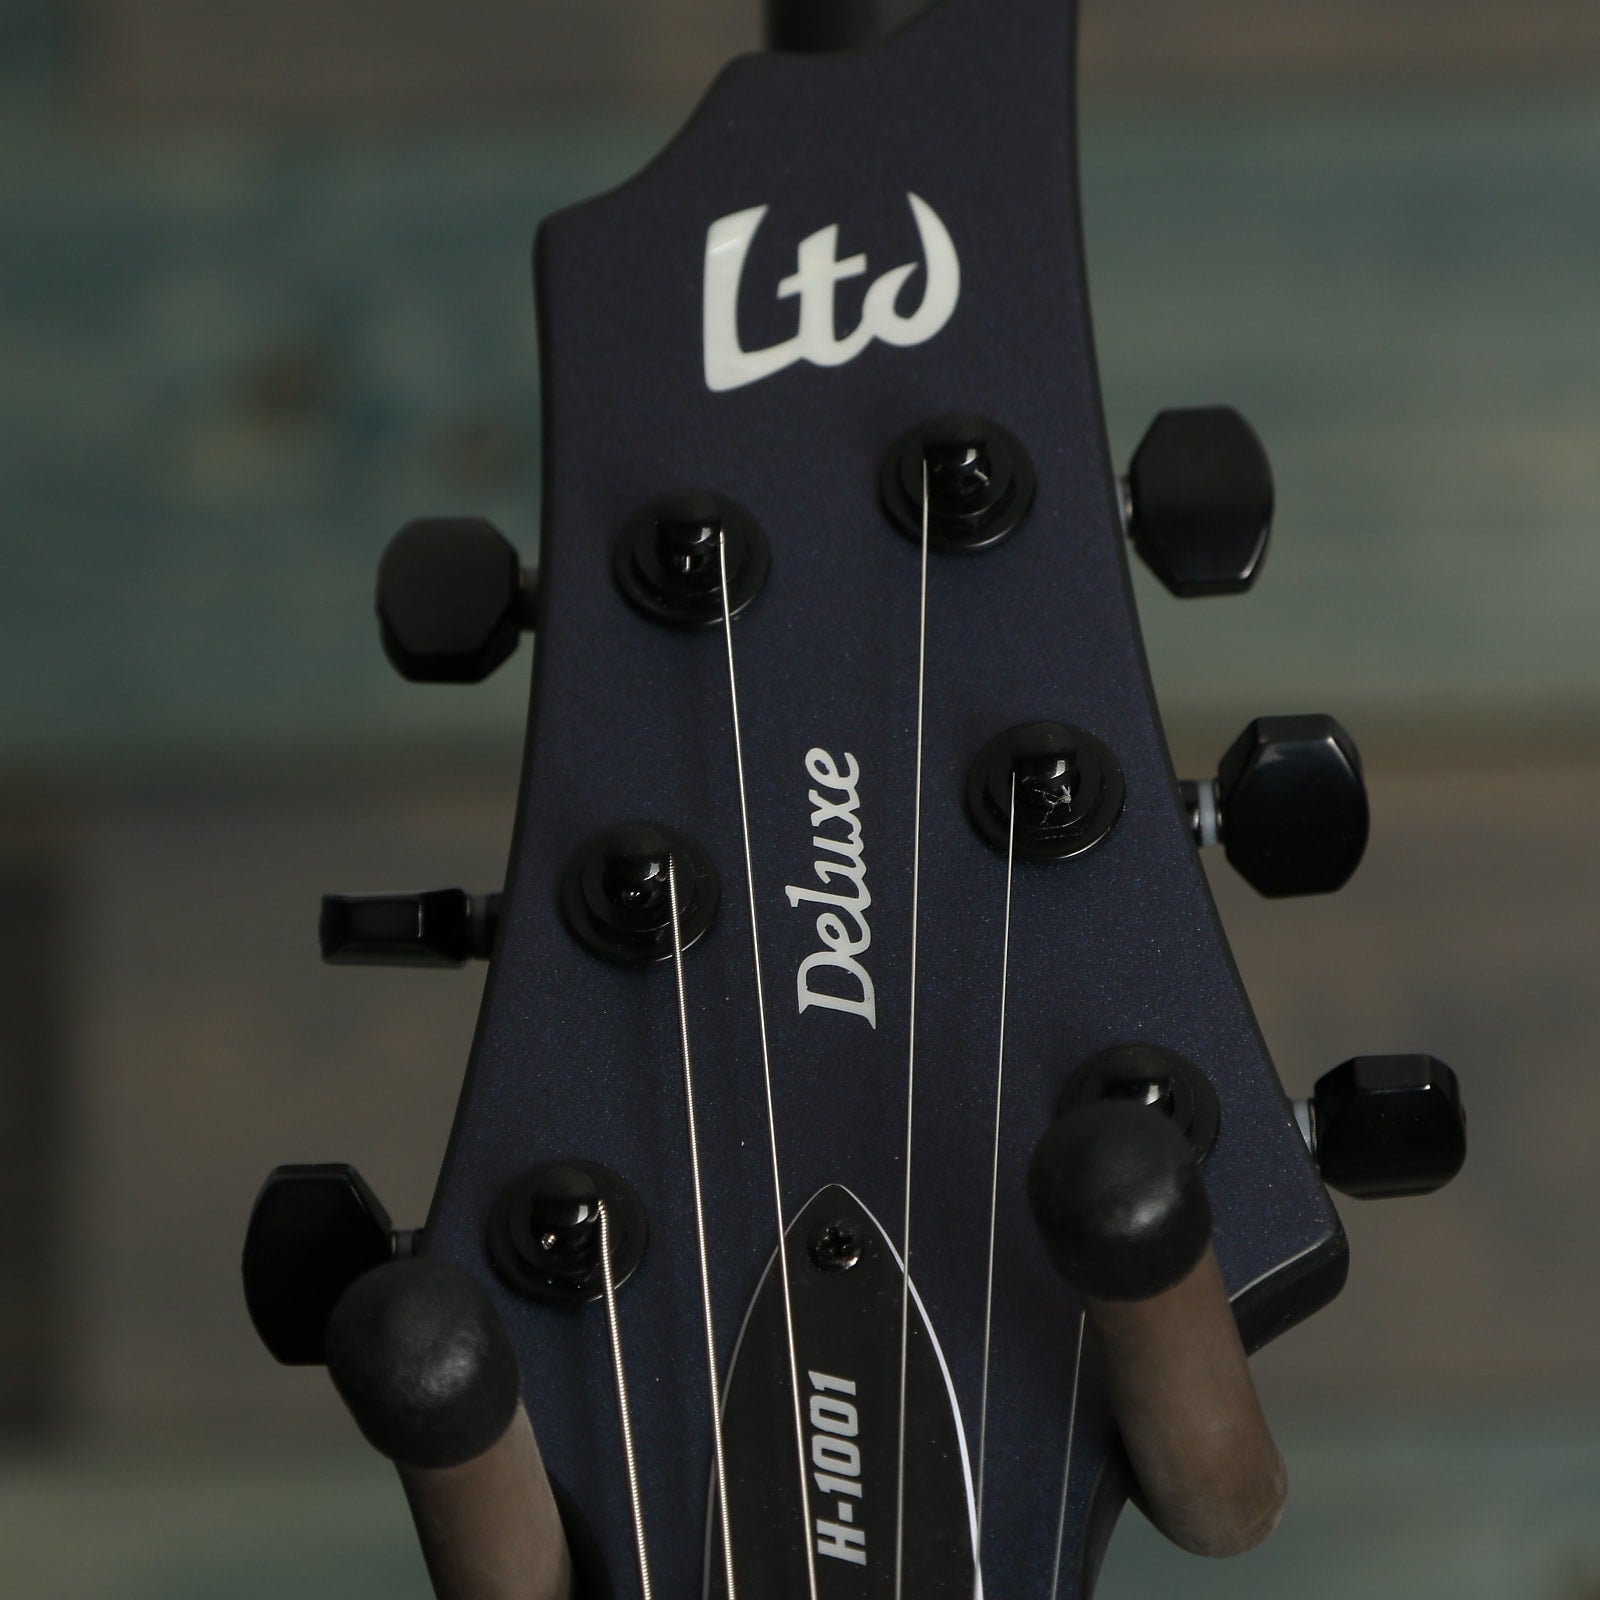 ESP LTD H-1001 Electric Guitar - Violet Andromeda Satin